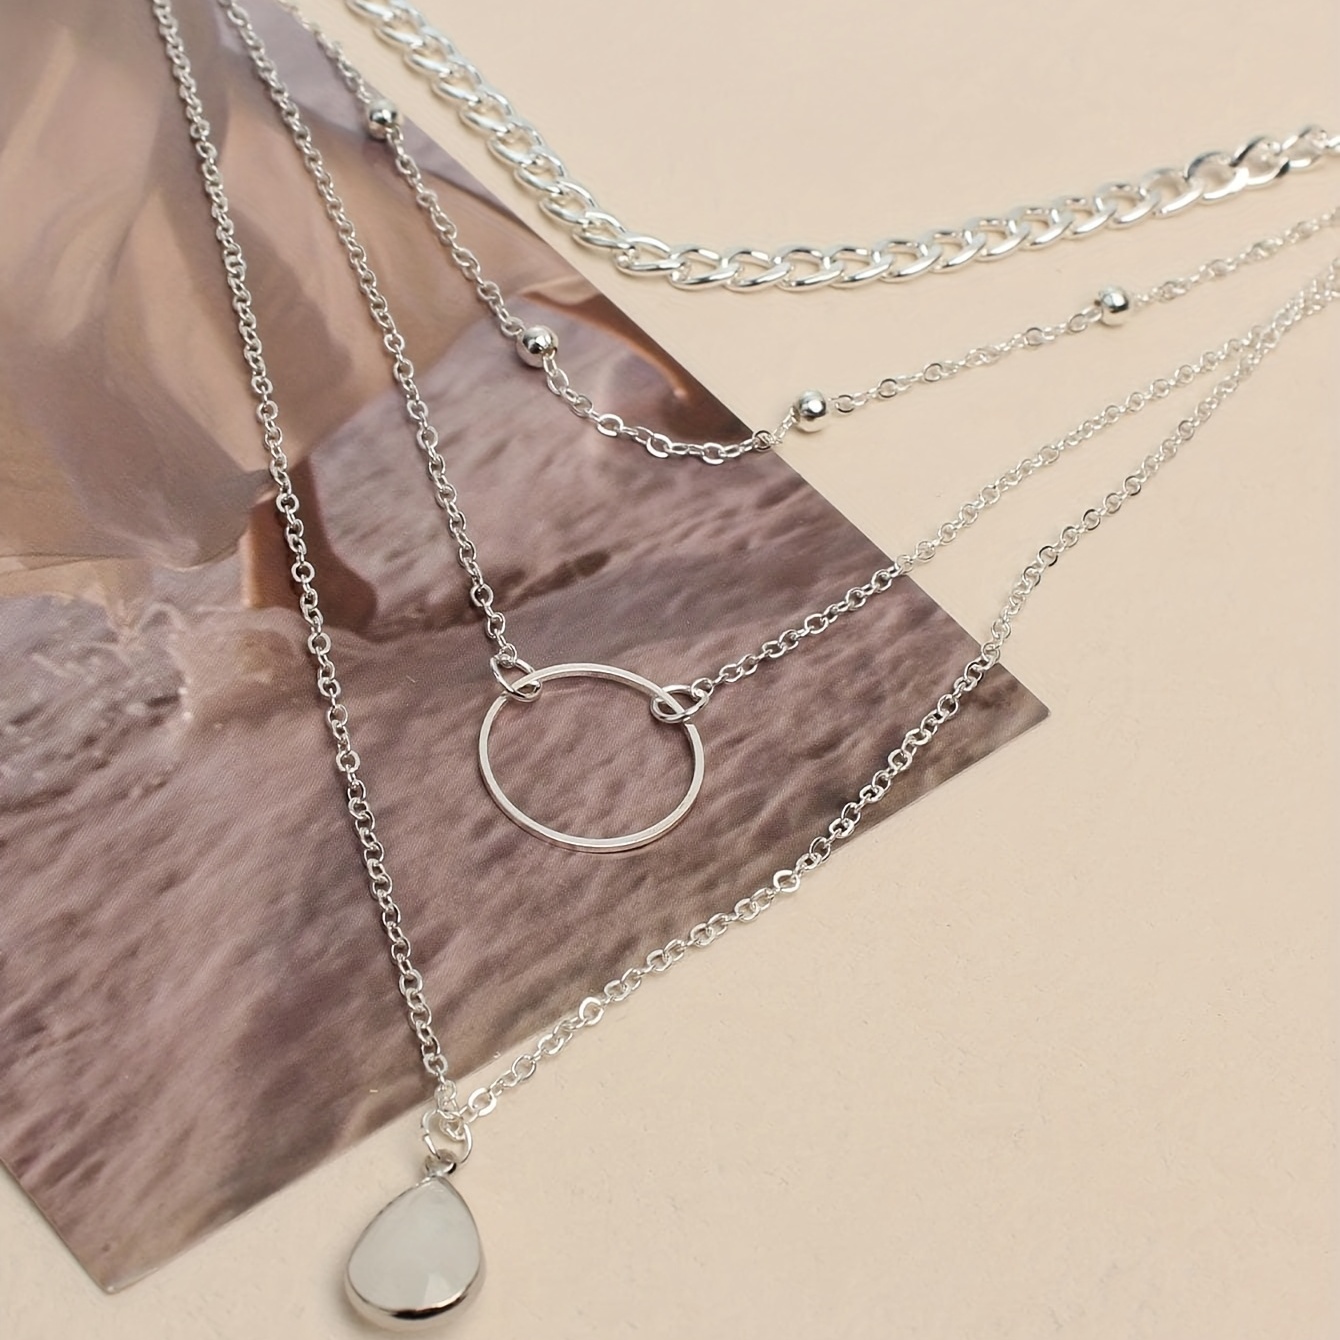 Bohemian Style Zinc Alloy Exquisite Water Drop Pendant Multilayer Necklace